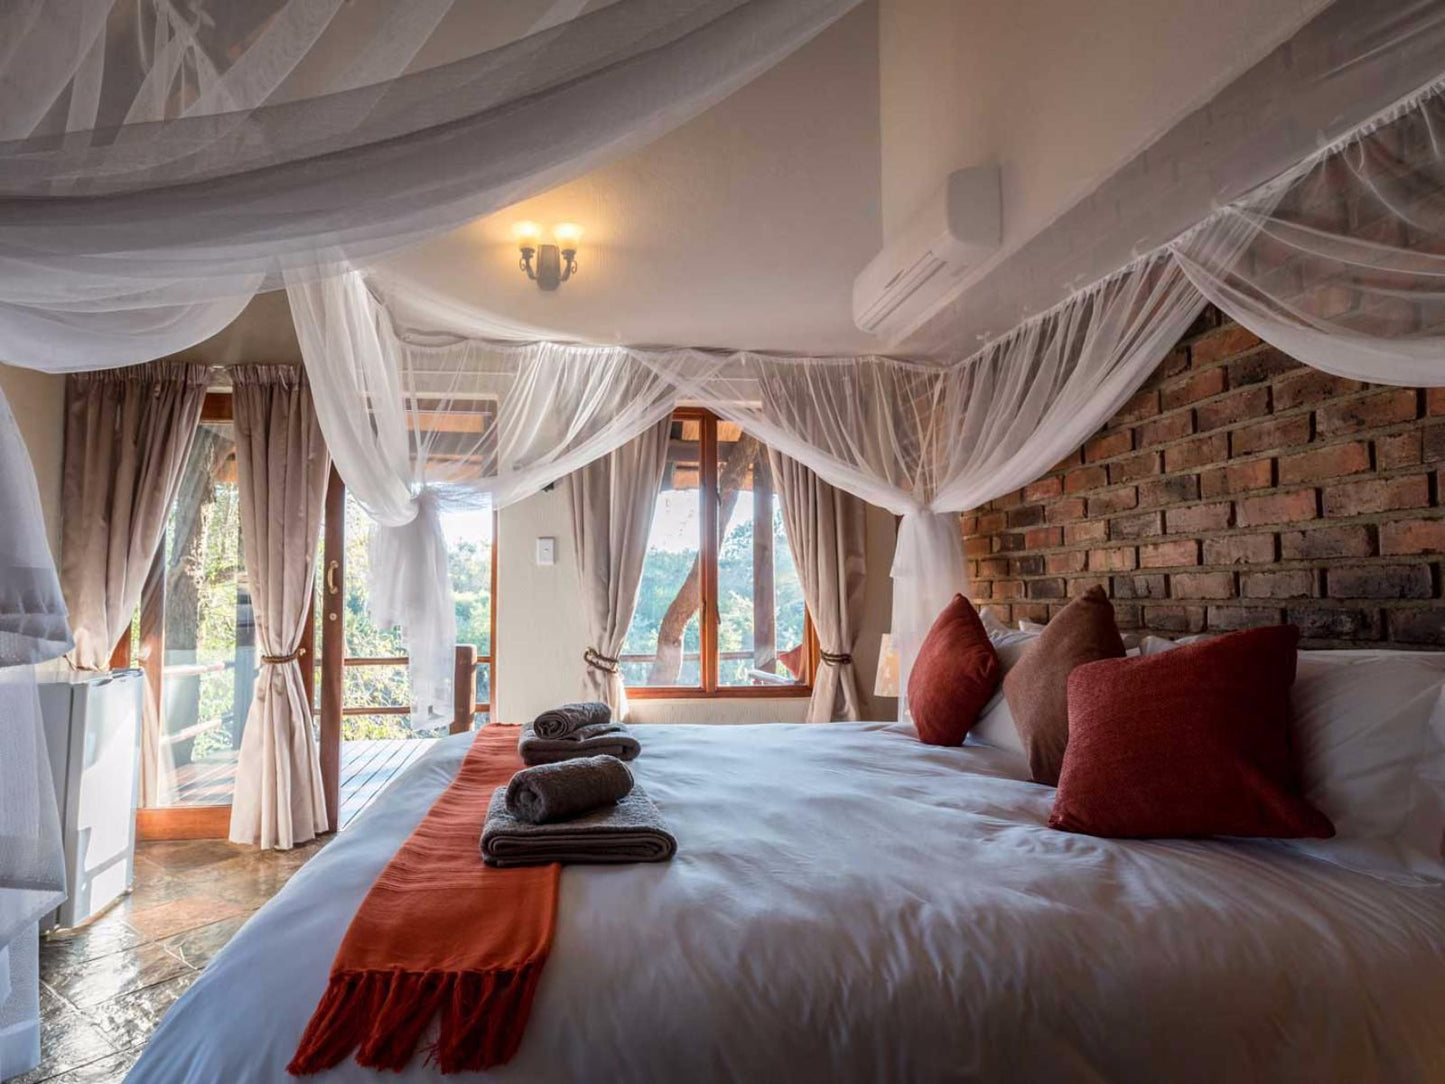 Klaserie River Safari Lodge Hoedspruit Limpopo Province South Africa Bedroom